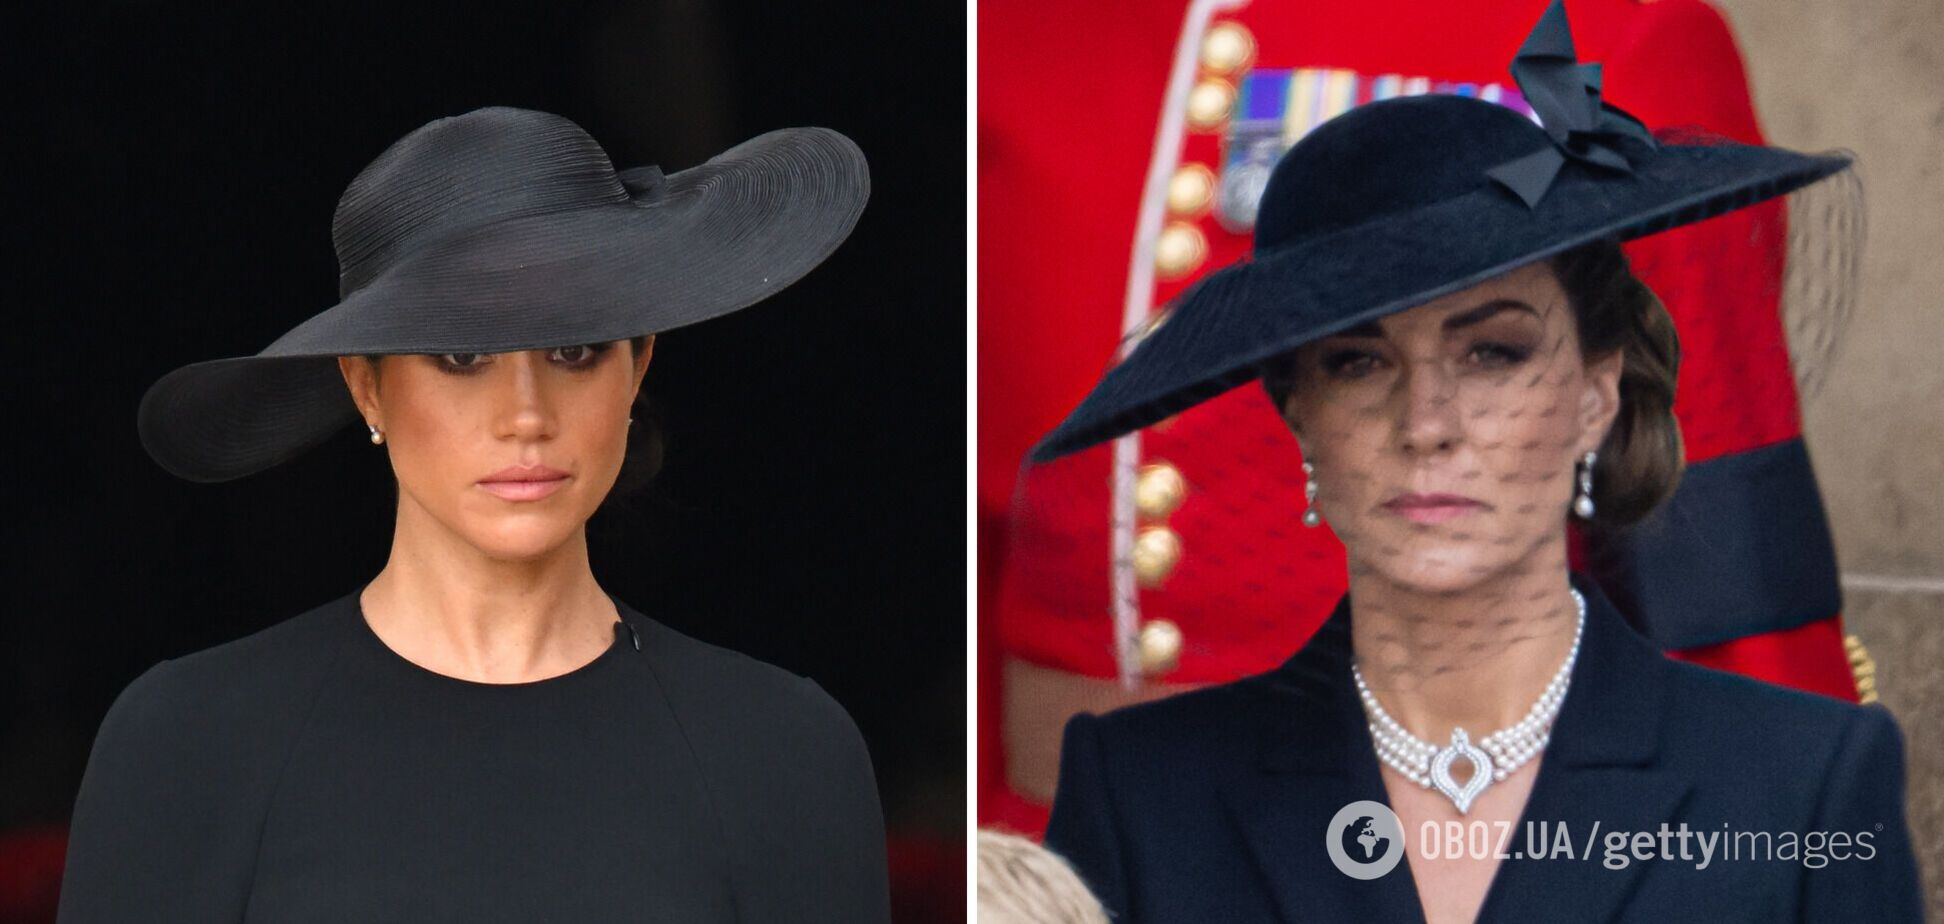 Стало известно, почему Кейт Миддлтон надела на похороны королевы 'траурную вуаль', а Меган Маркл – черную шляпку